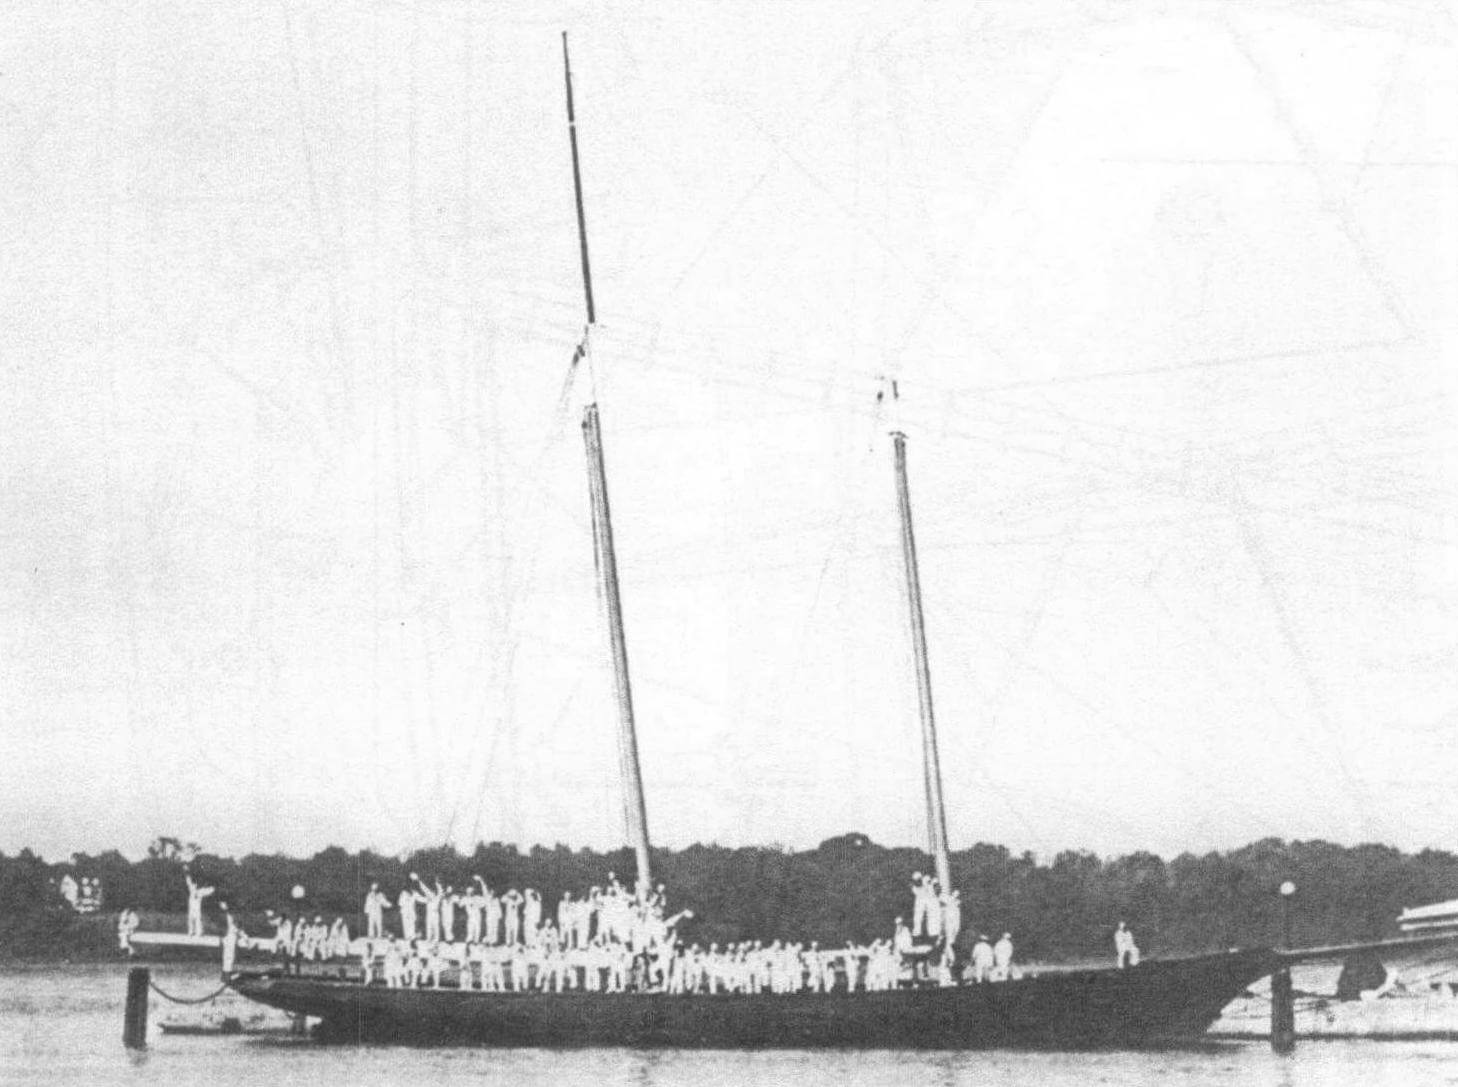 Вспомогательное судно IX-41 ВМС США - бывшая яхта «Америка». Аннаполис, середина 1930-х годов